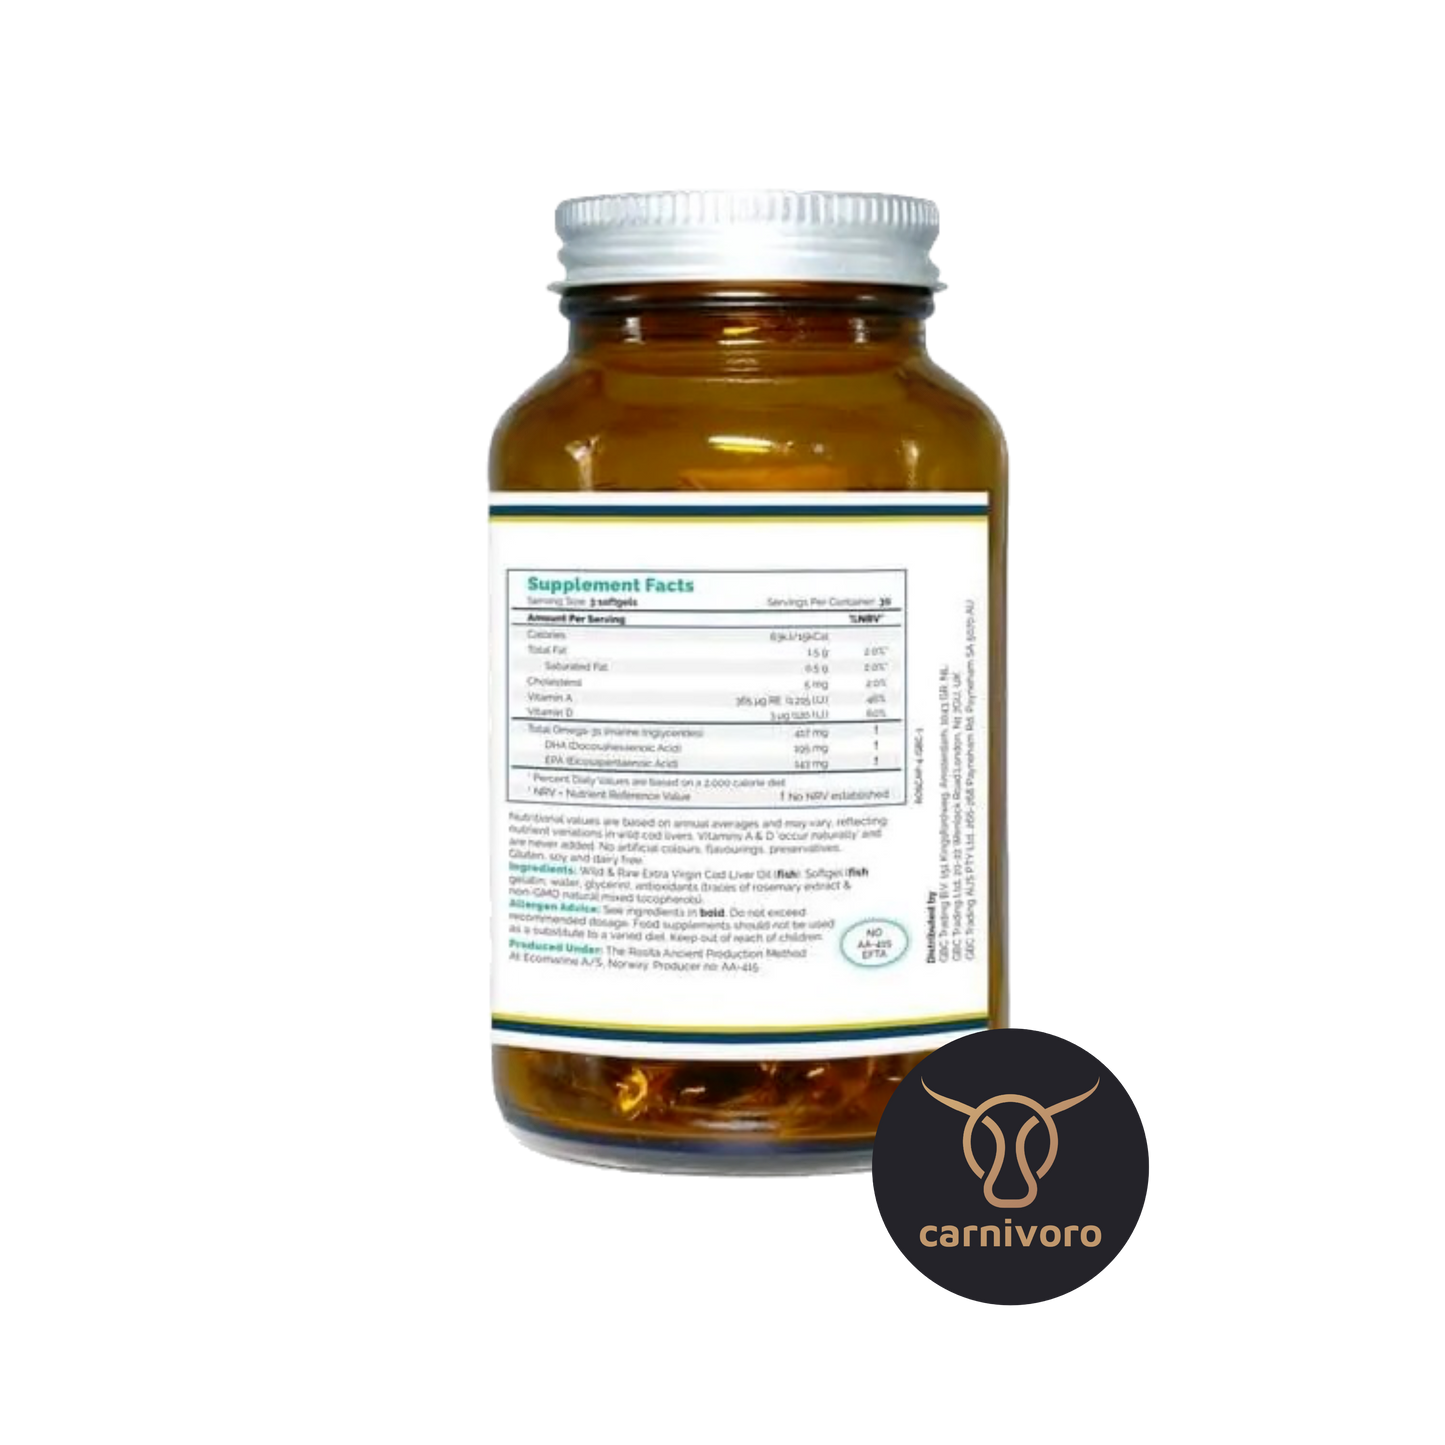 Rosita Kapseln » Vitamin D & Omega 3 (Fischöl) » Kapseln